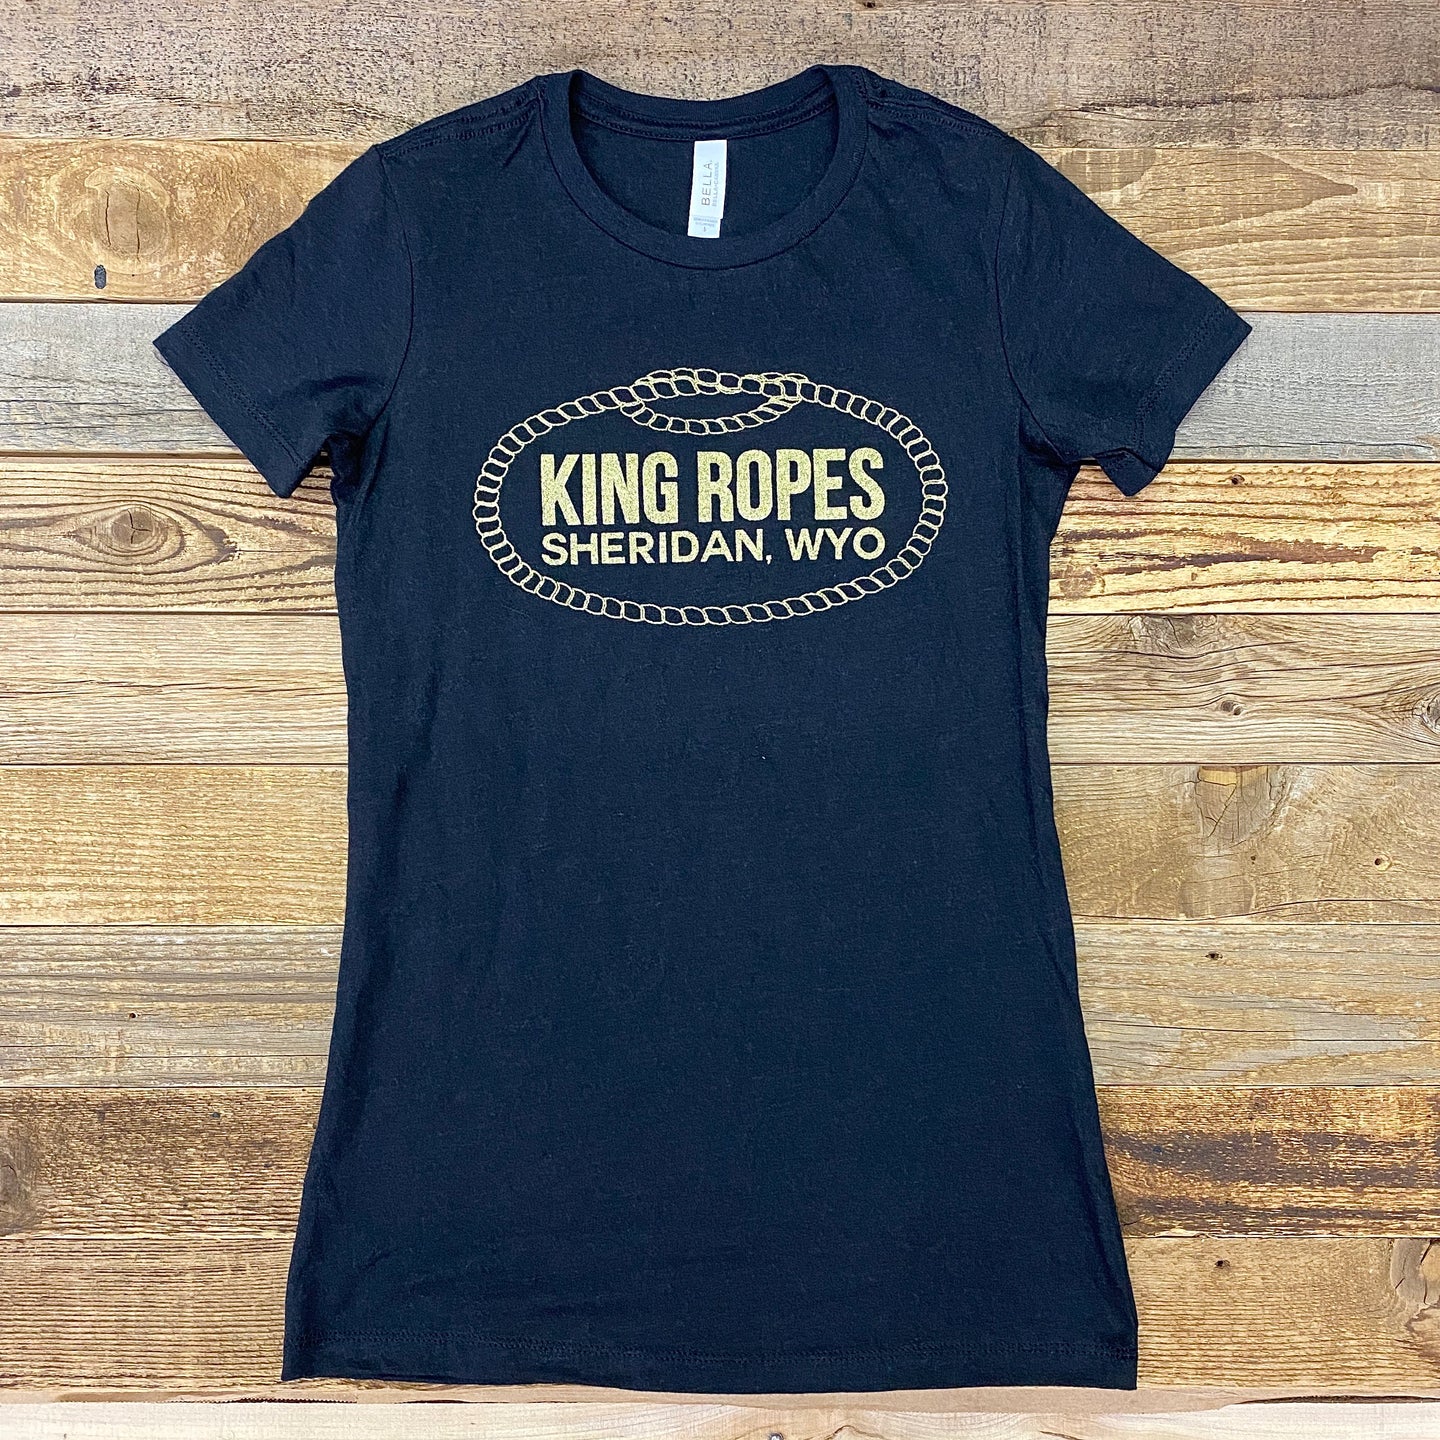 Women's Metallic Gold King Ropes Tee - Black